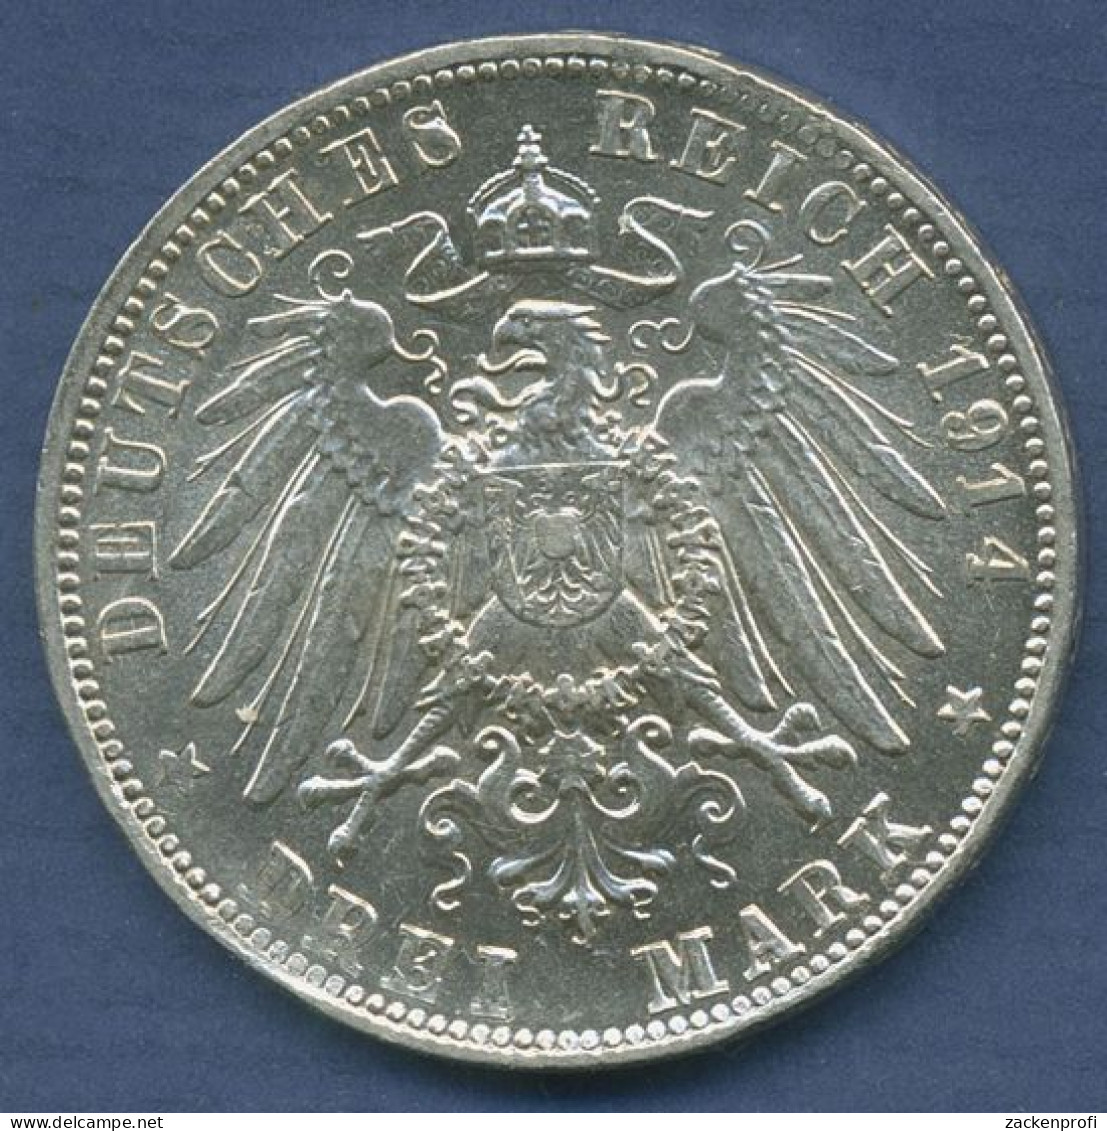 Bayern 3 Mark 1914 D, König Ludwig III., J 52 Vz/vz + (m6415) - 2, 3 & 5 Mark Silber